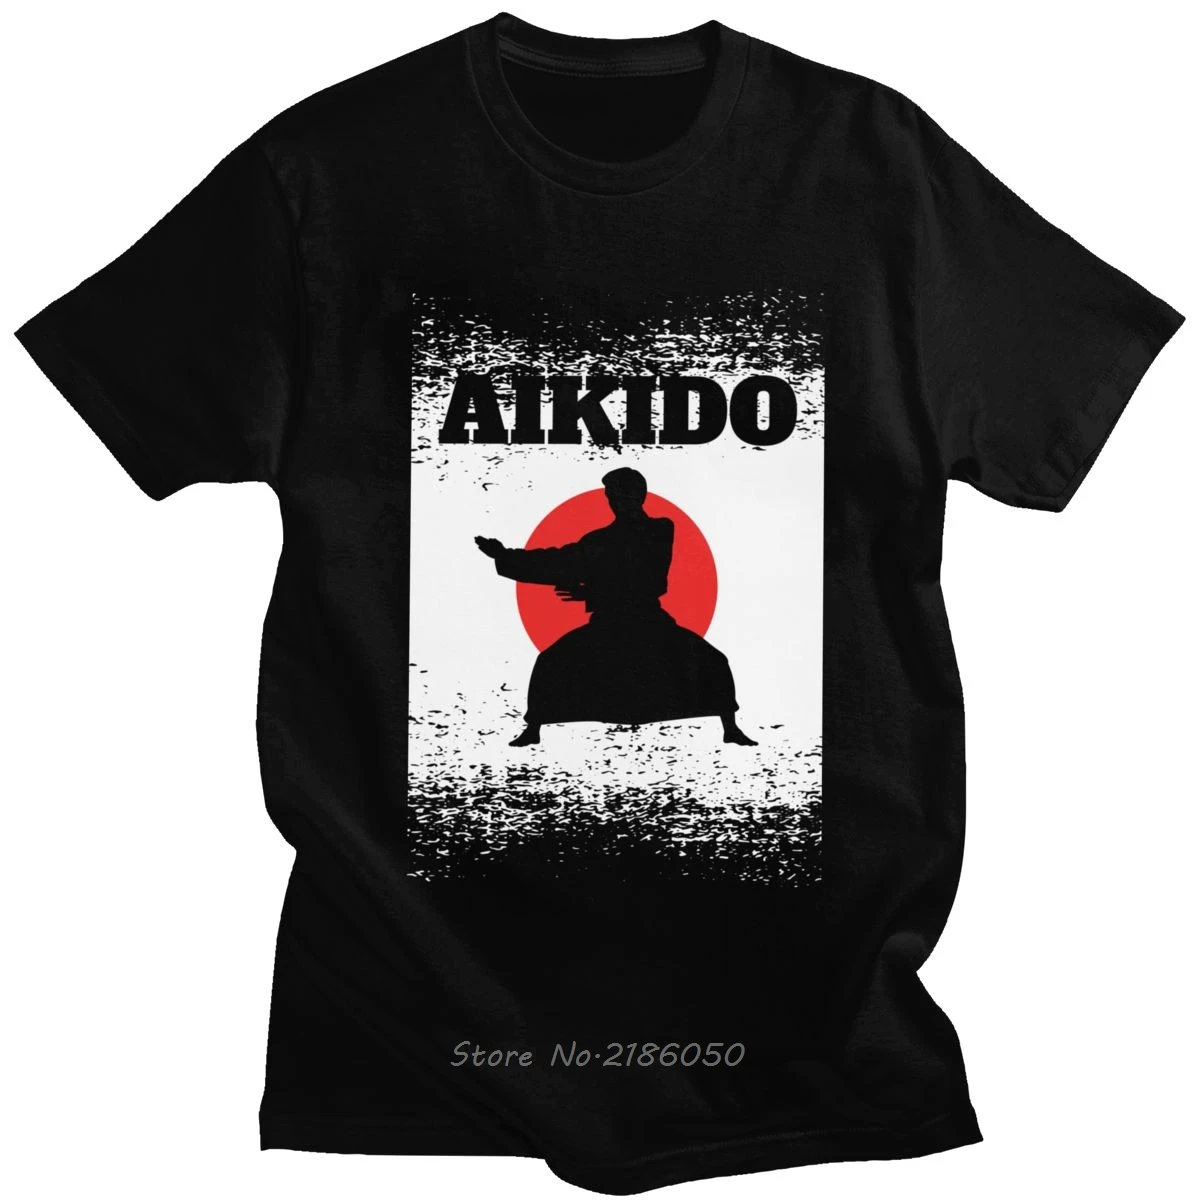 

Футболка Aikido мужская с коротким рукавом, Классическая тенниска из хлопка, модная майка для отдыха, боевых искусств, кунг-фу, карате, в японск...